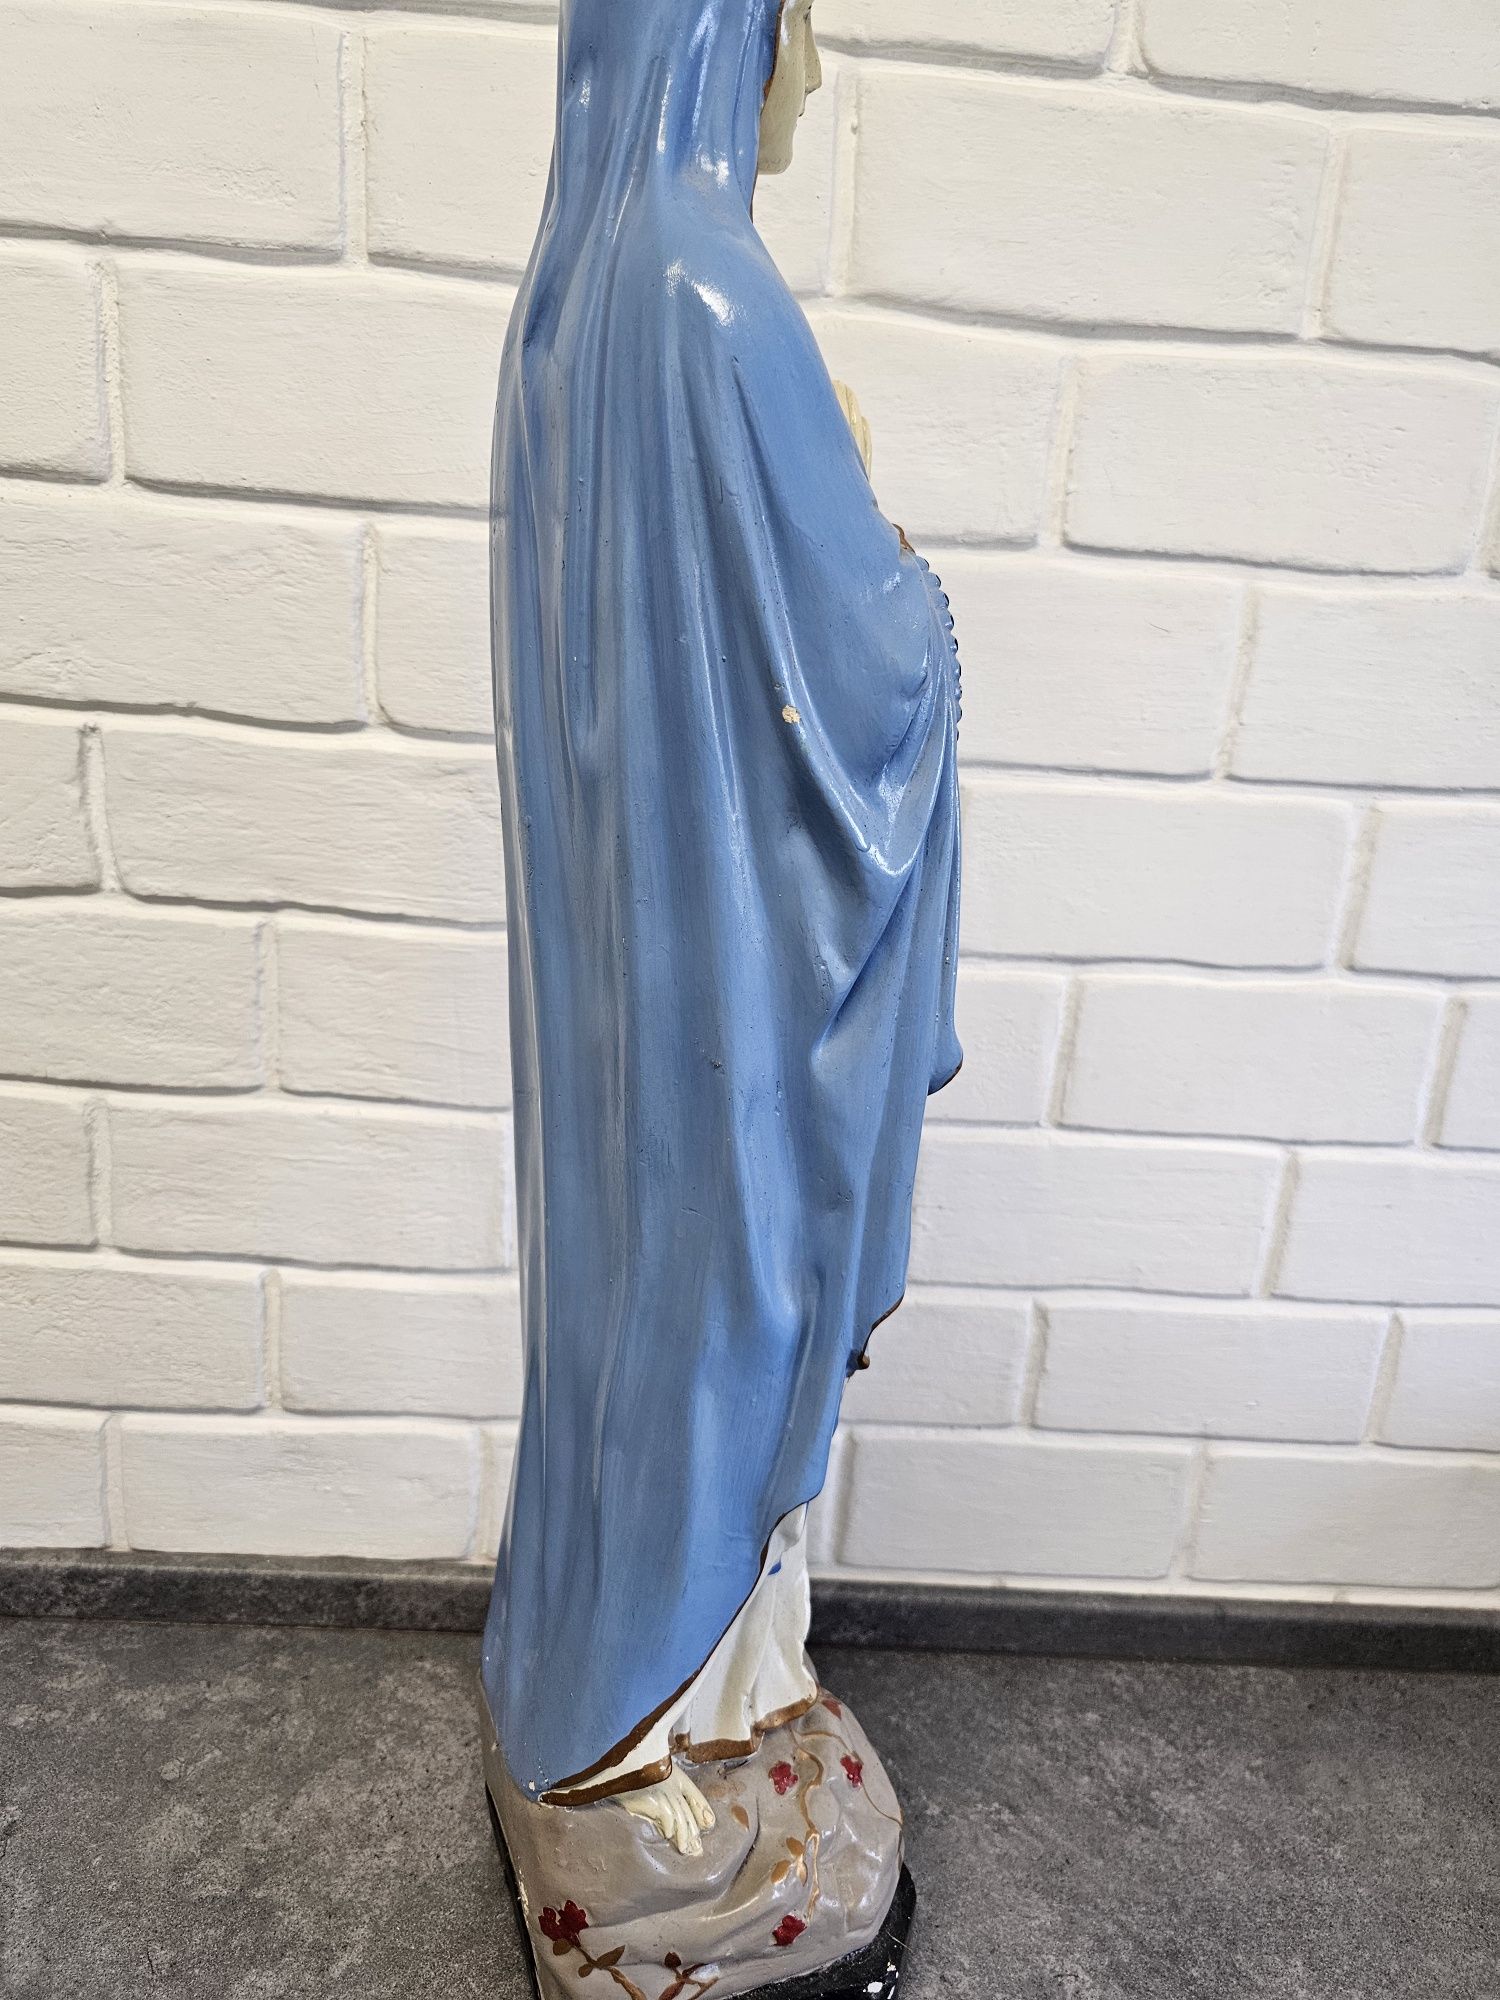 Duża stara figura Matki Boskiej, 69 cm